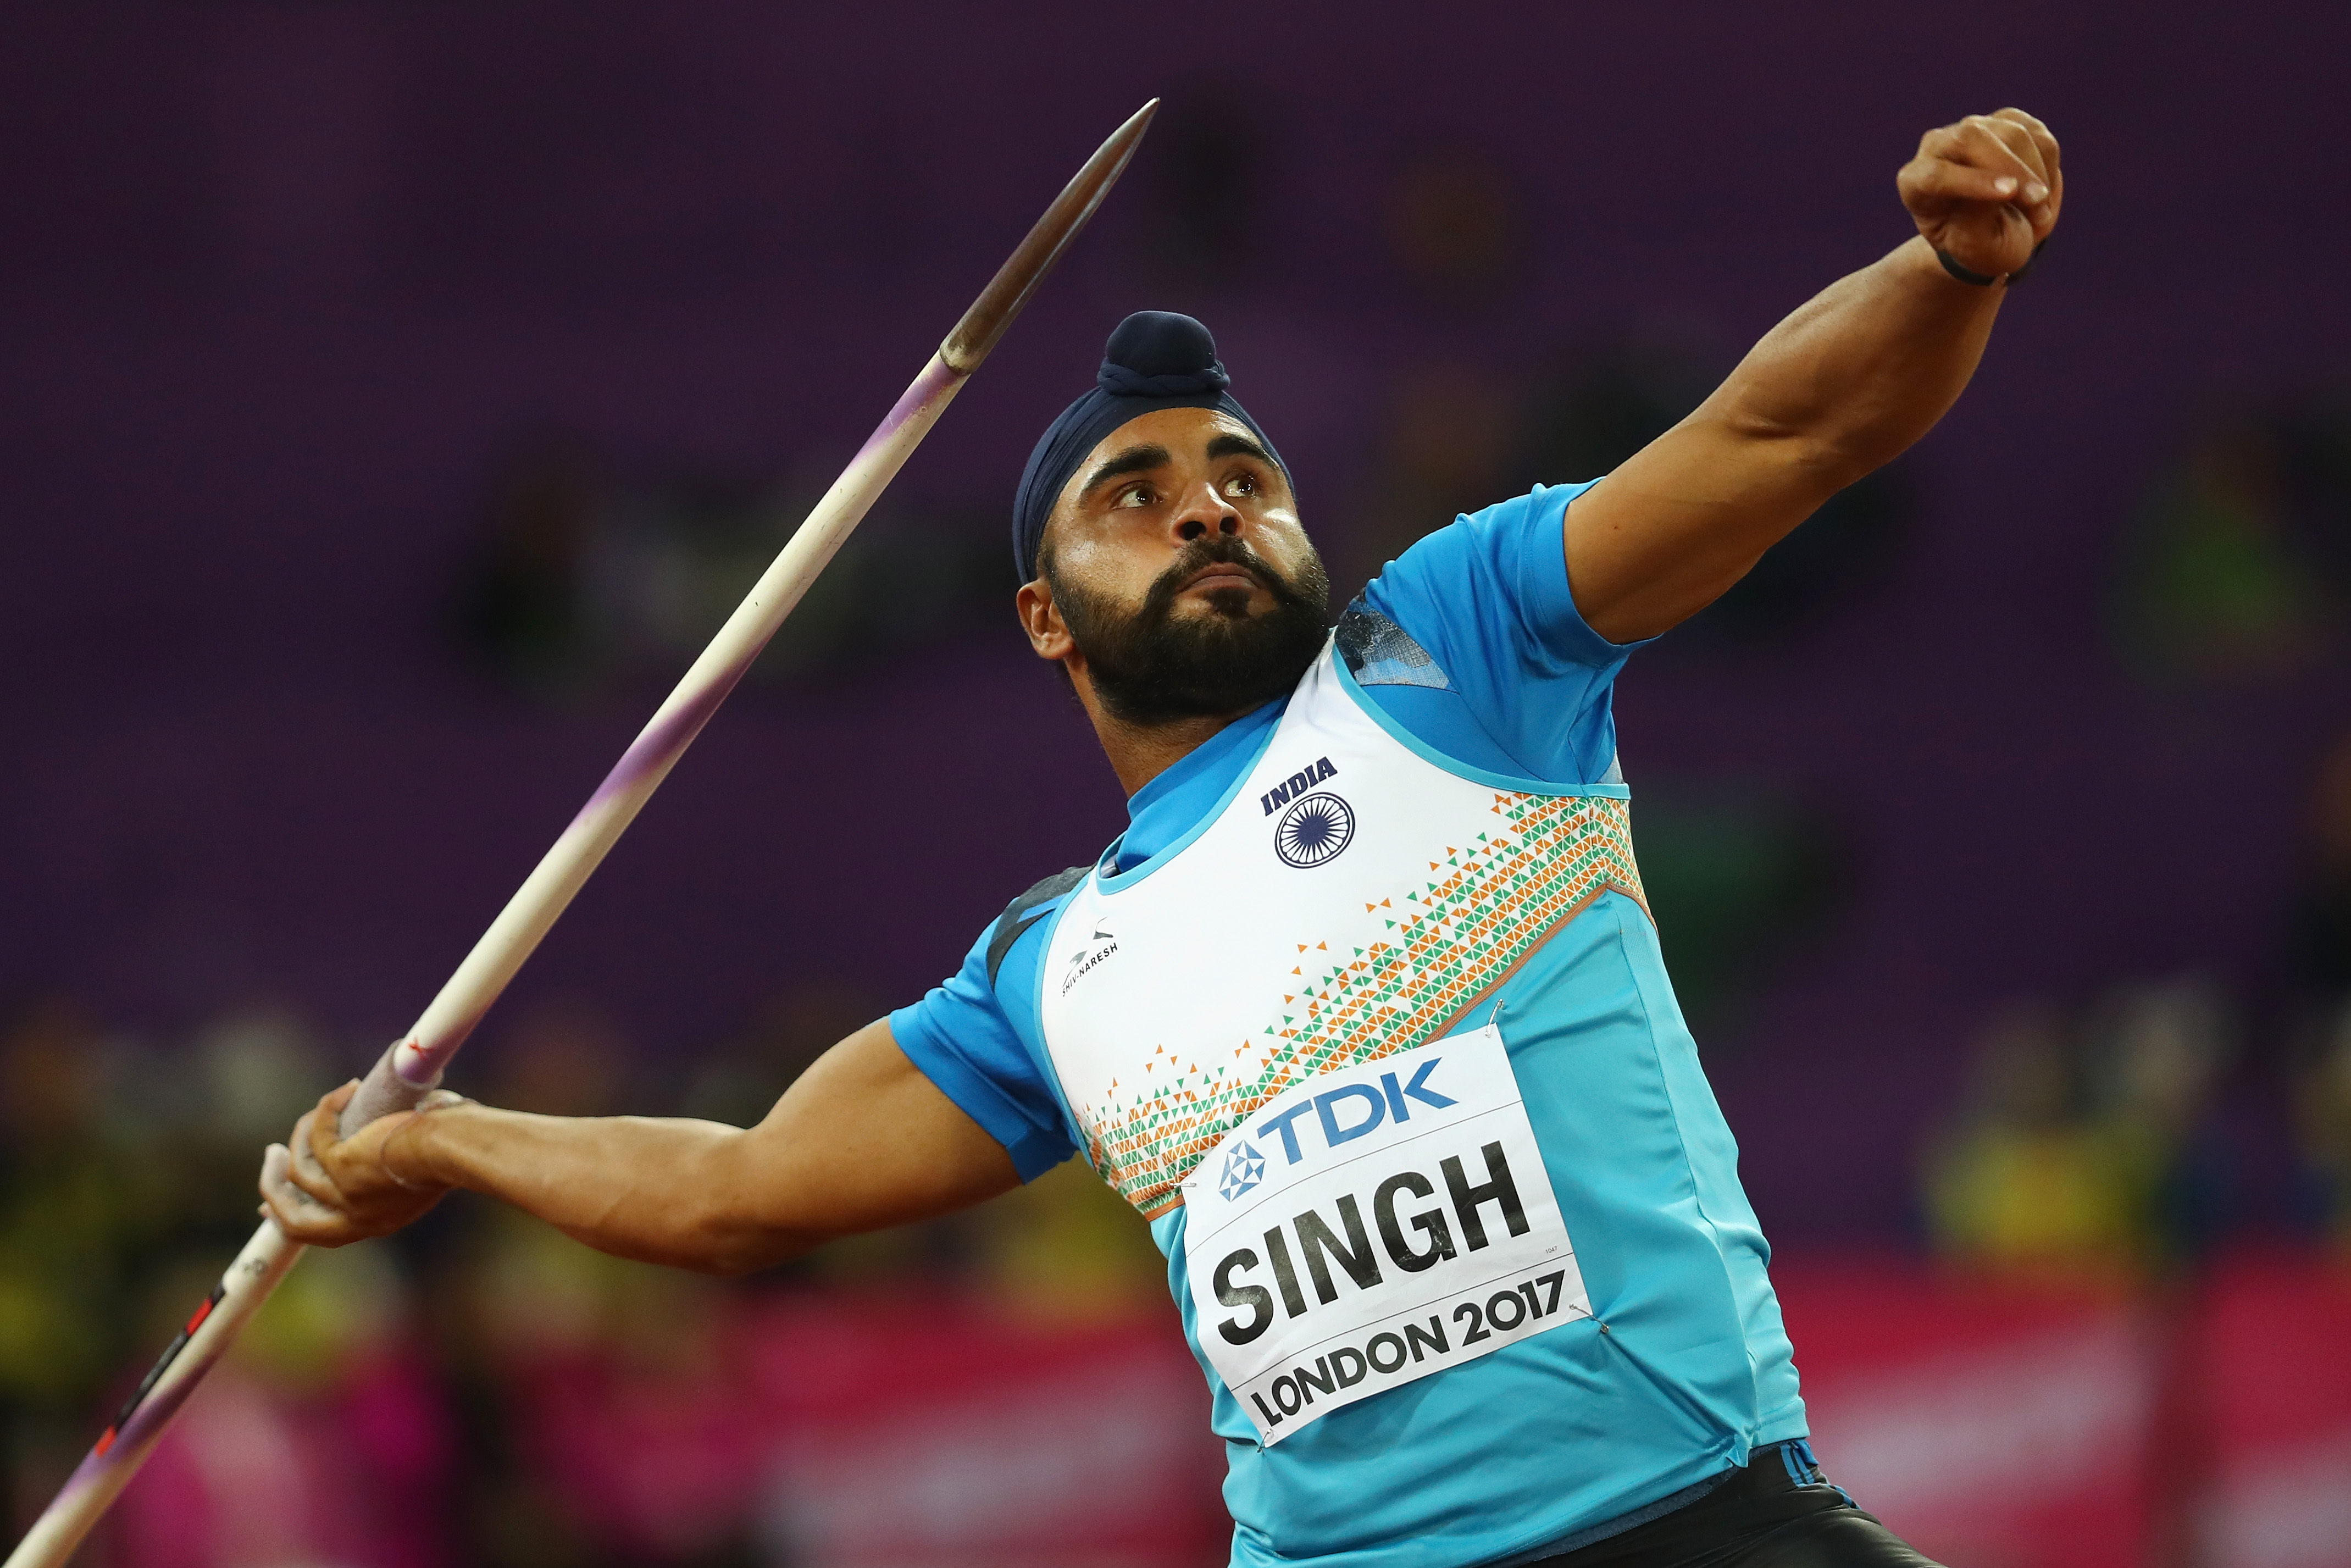 Javelin thrower Davinder Singh Kang to face 4-year-ban after flunking dope test